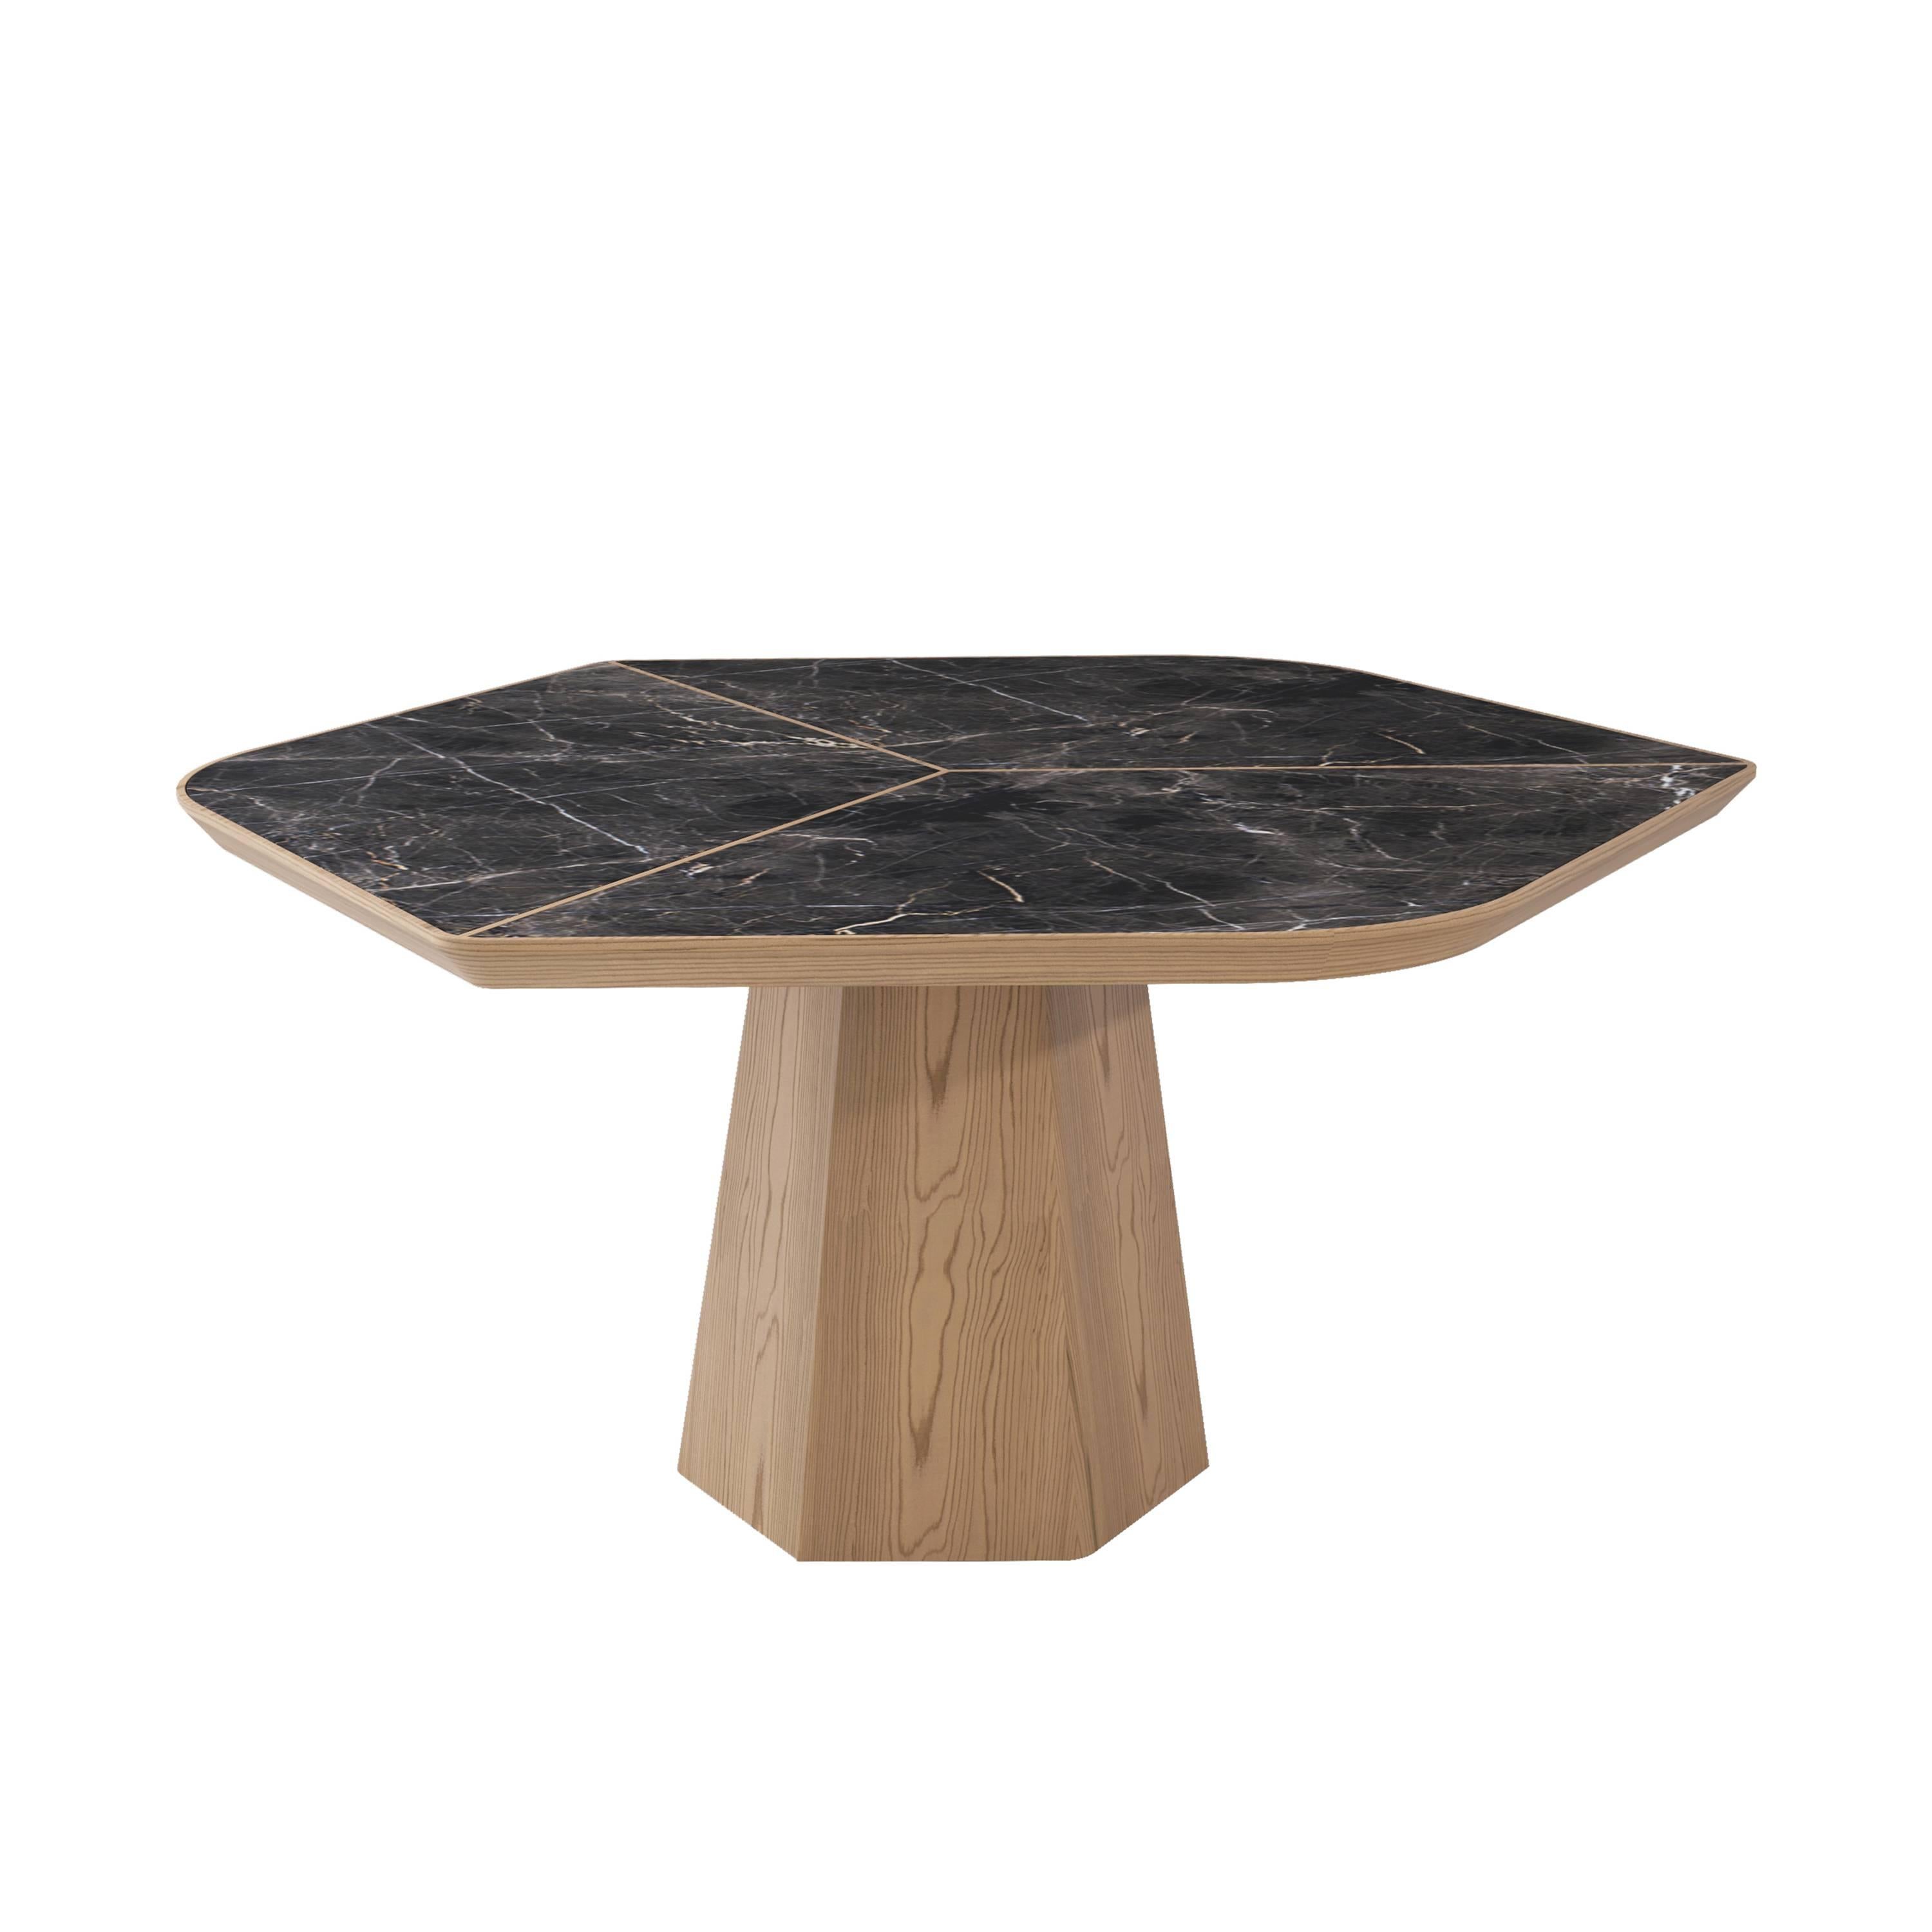 L'élégance classique du marbre associée à des détails sophistiqués font de la table Evolve une véritable pièce de sculpture.
 
La table à manger Evolve a remporté le prix 